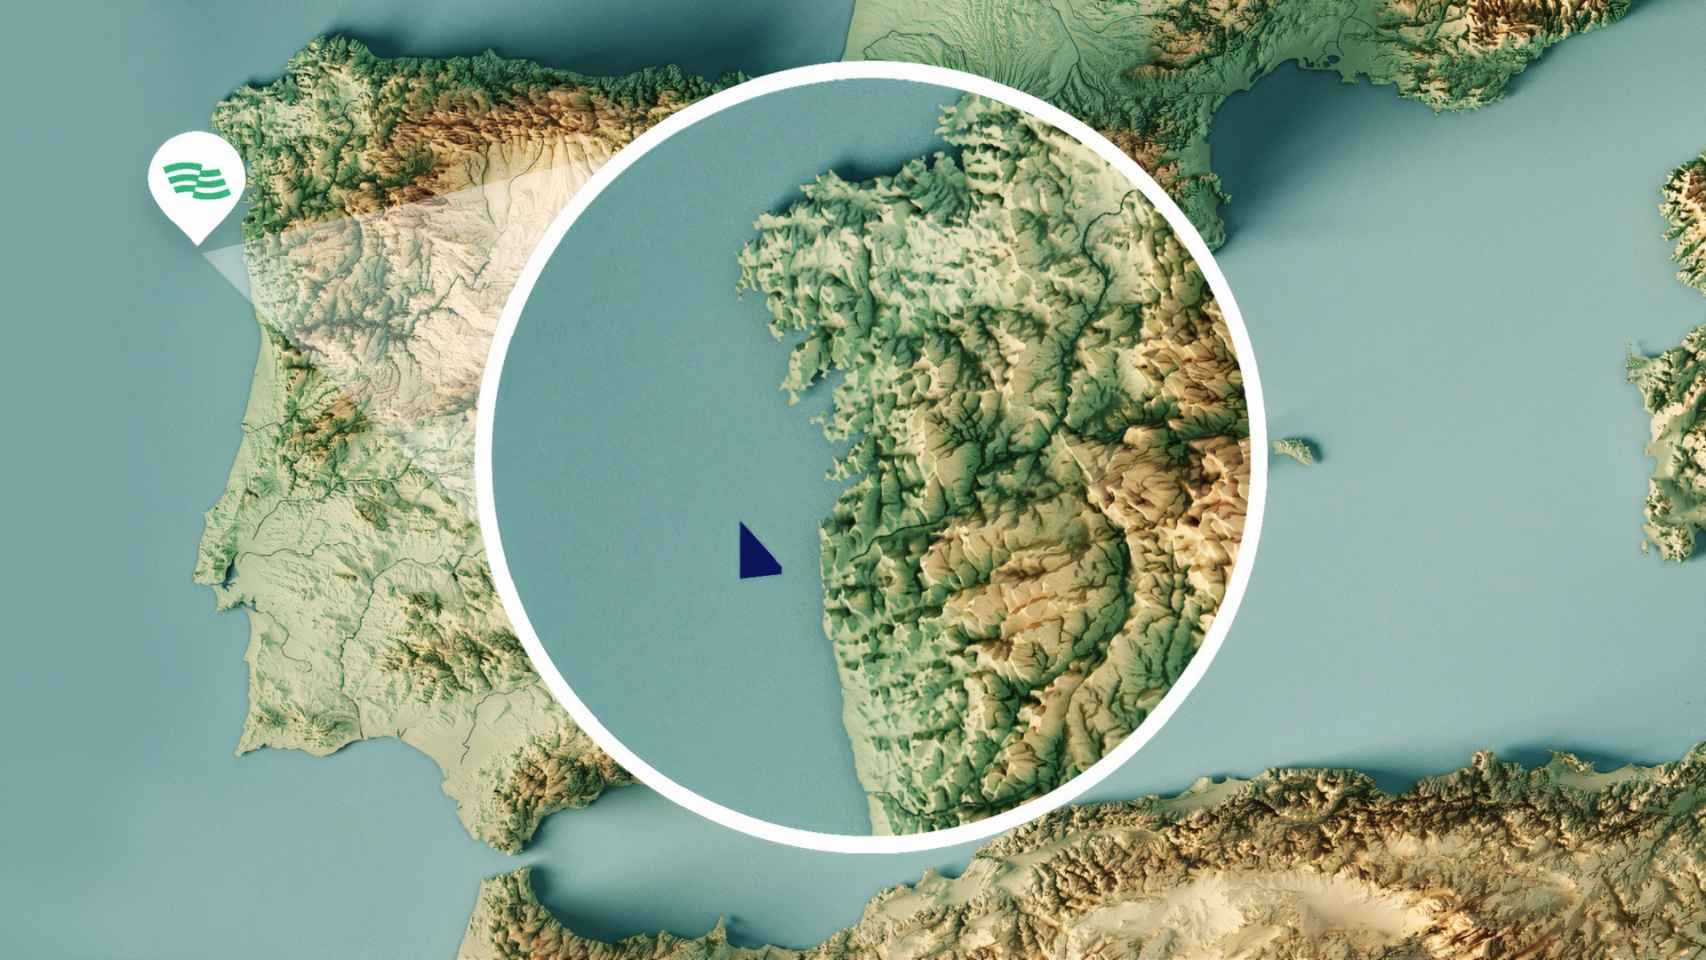 IberBlue Wind proyecta dos parques de eólica marina flotante en Galicia y Portugal